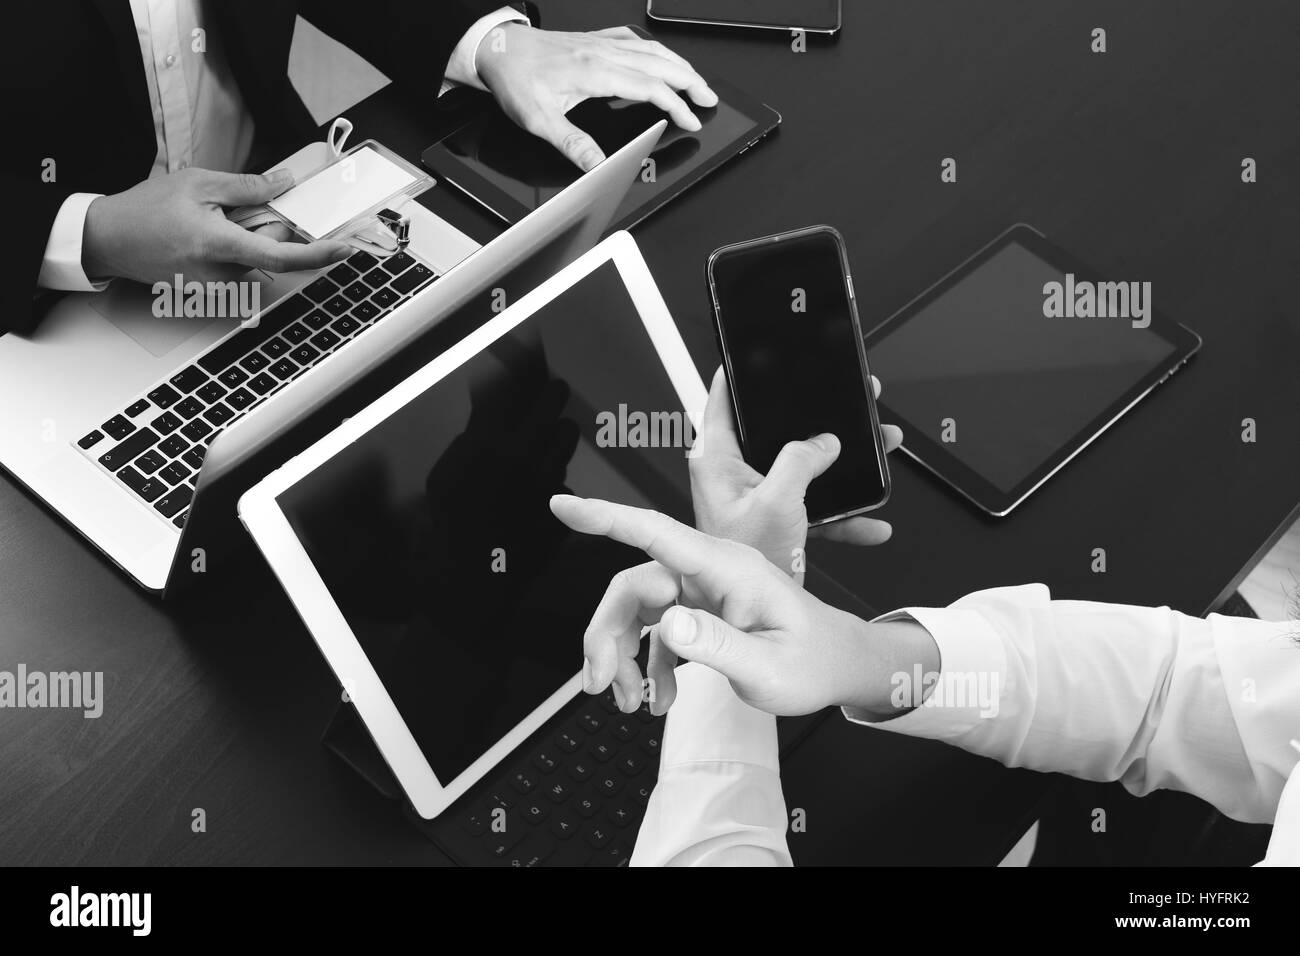 La réunion de l'équipe de travail concept,businessman using smart phone et tablette numérique et un ordinateur portable et d'étiquette de nom de bureau moderne en noir et blanc, Banque D'Images